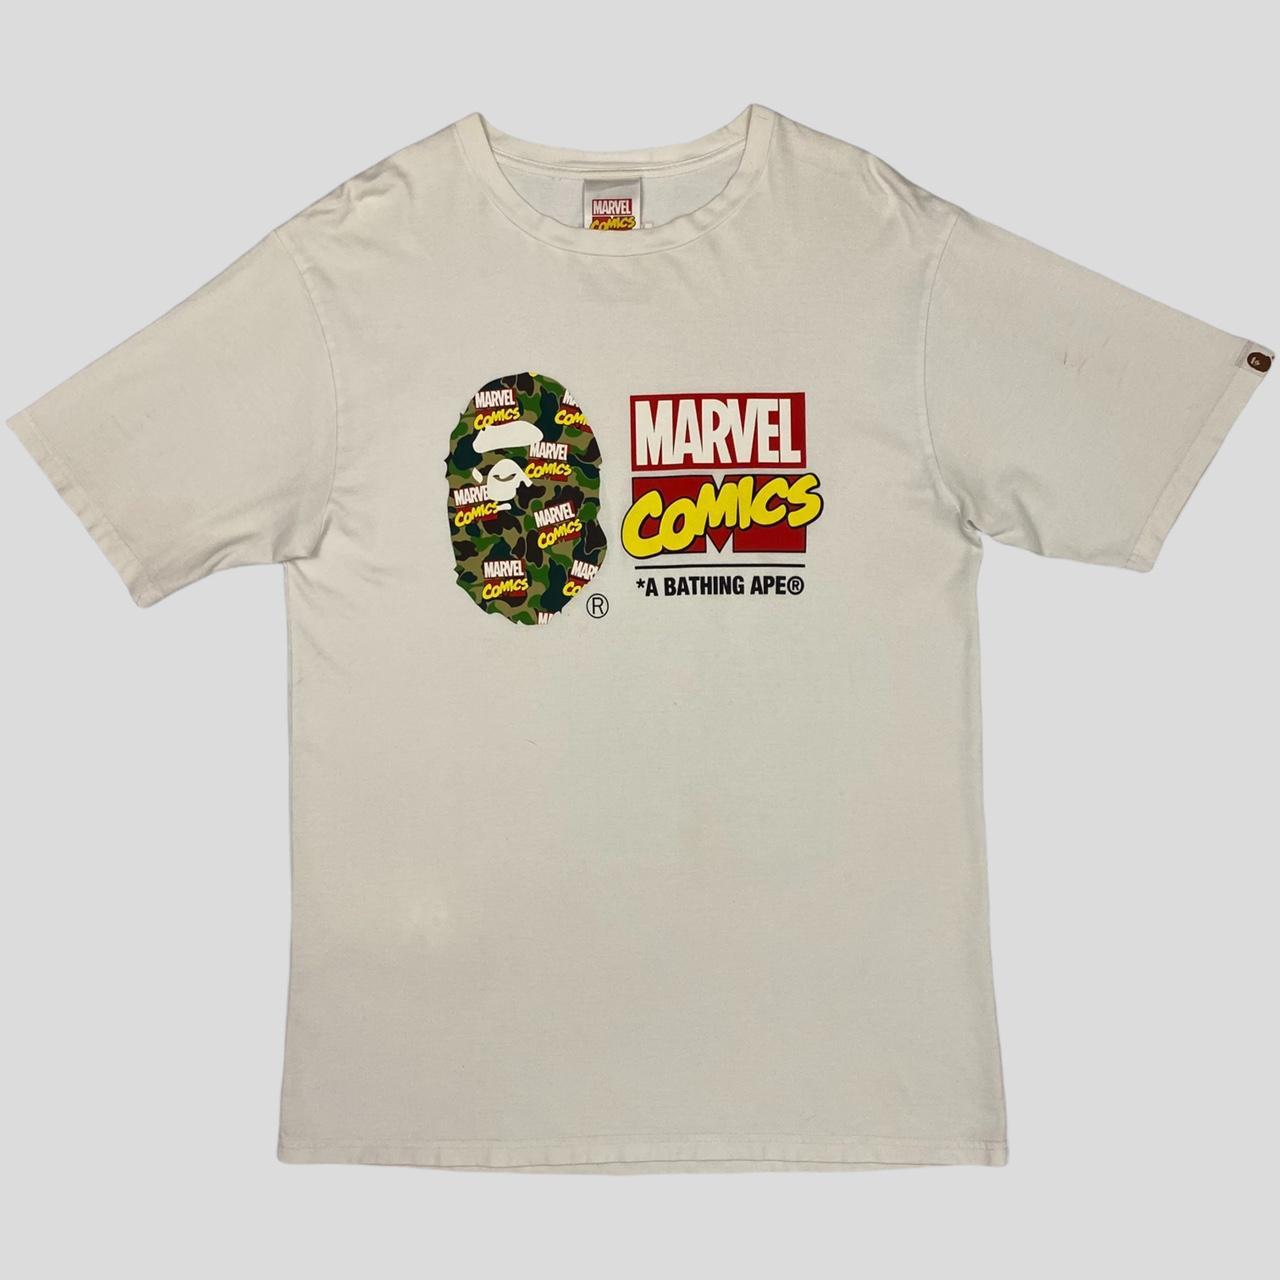 Bape x Marvel Comics 2019 Camo T-Shirt - XL